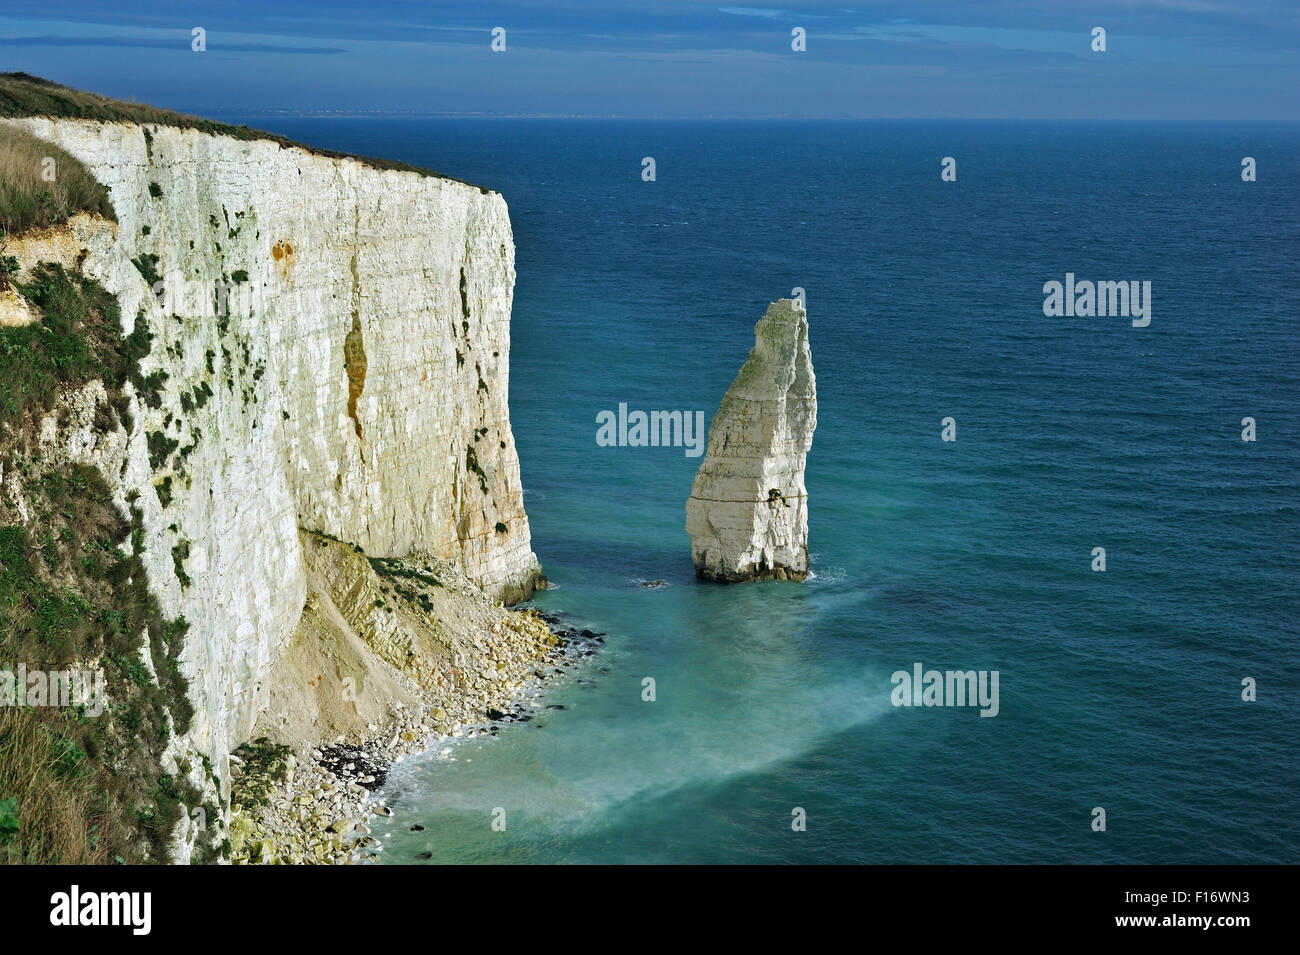 La pile de la mer de craie Pinnacles près de Old Harry Rocks à Handfast Point, à l'île de Purbeck, Jurassic Coast, Dorset, England, UK Banque D'Images